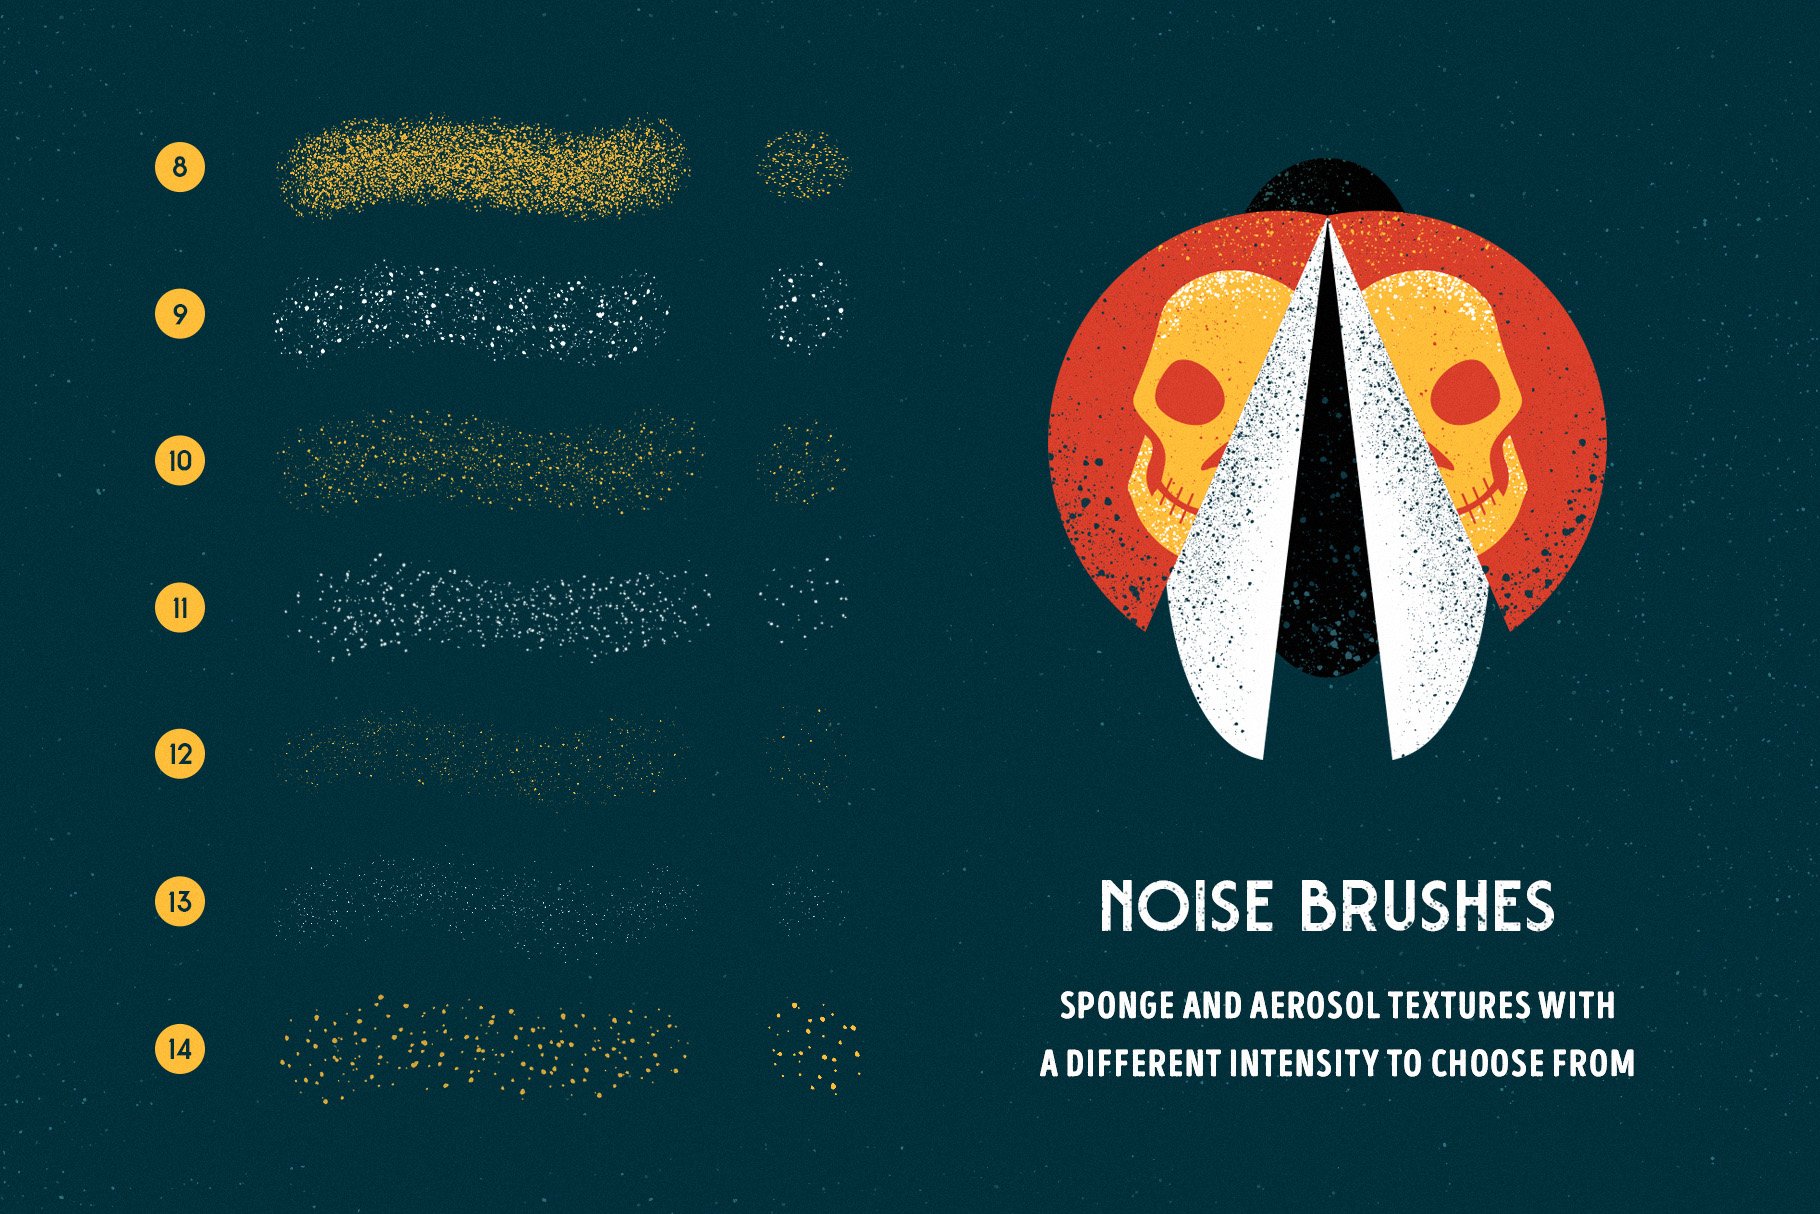 3 noise brushes 7